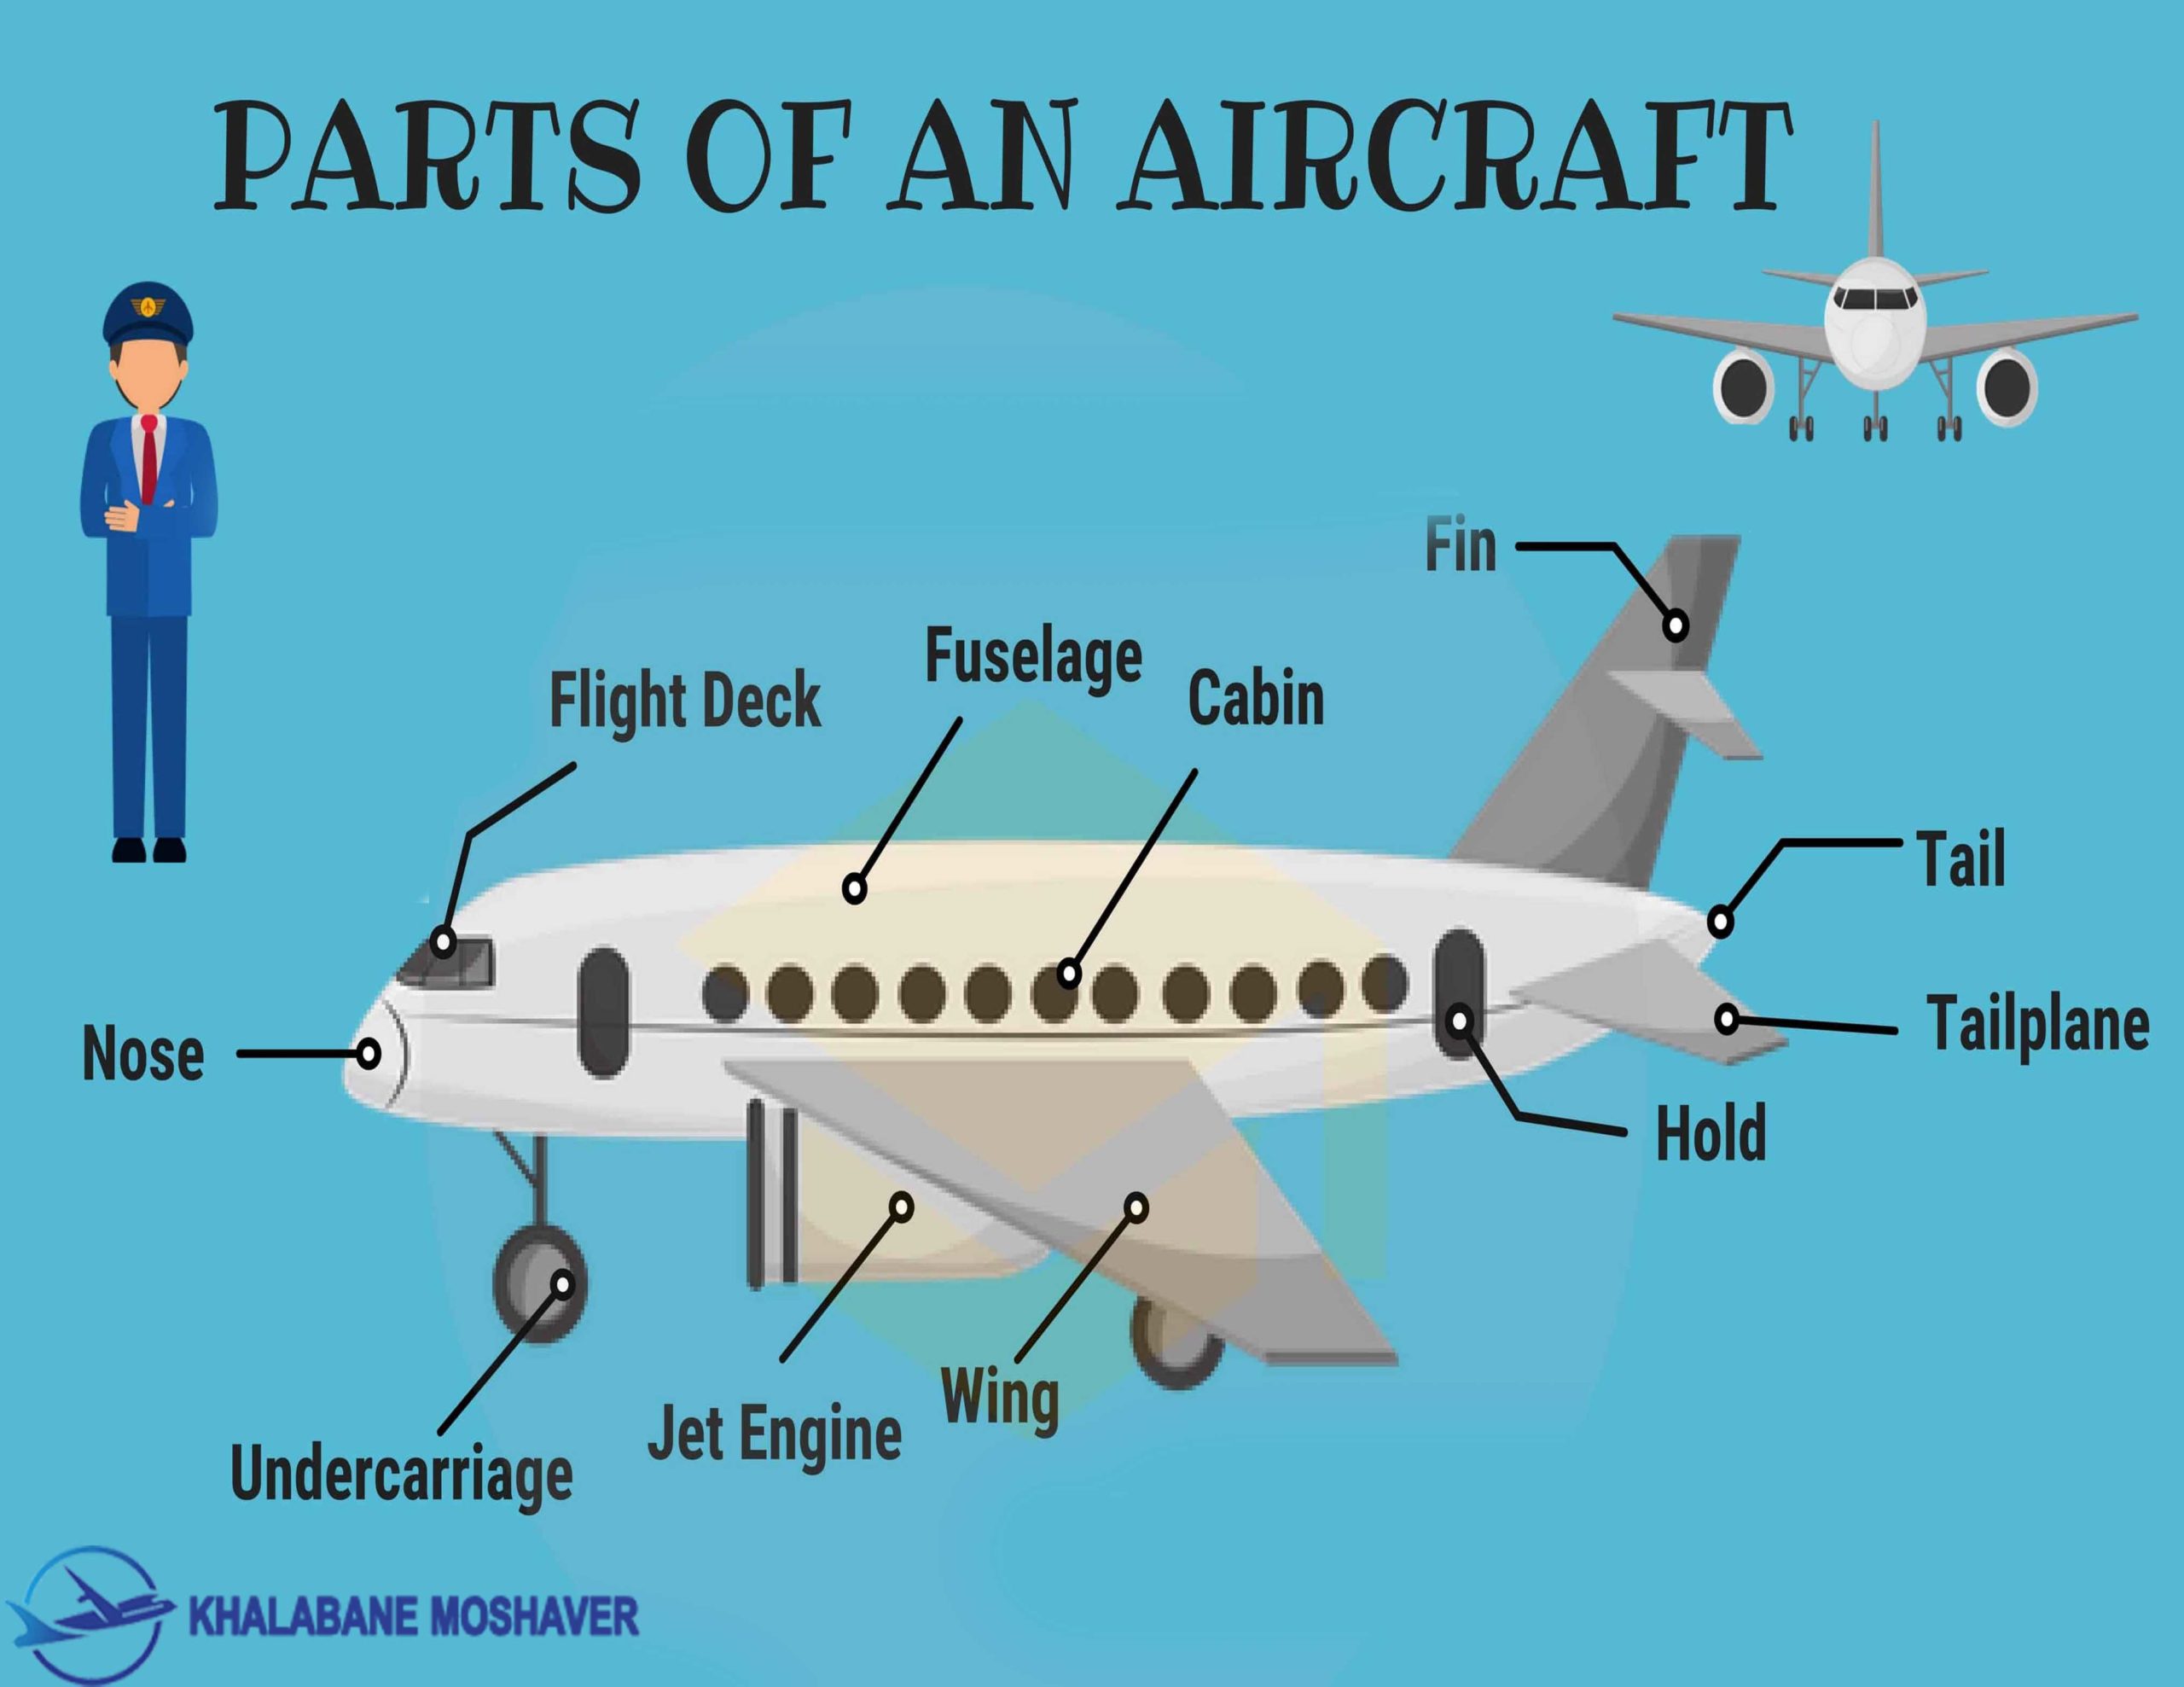 قسمت های اصلی هواپیما